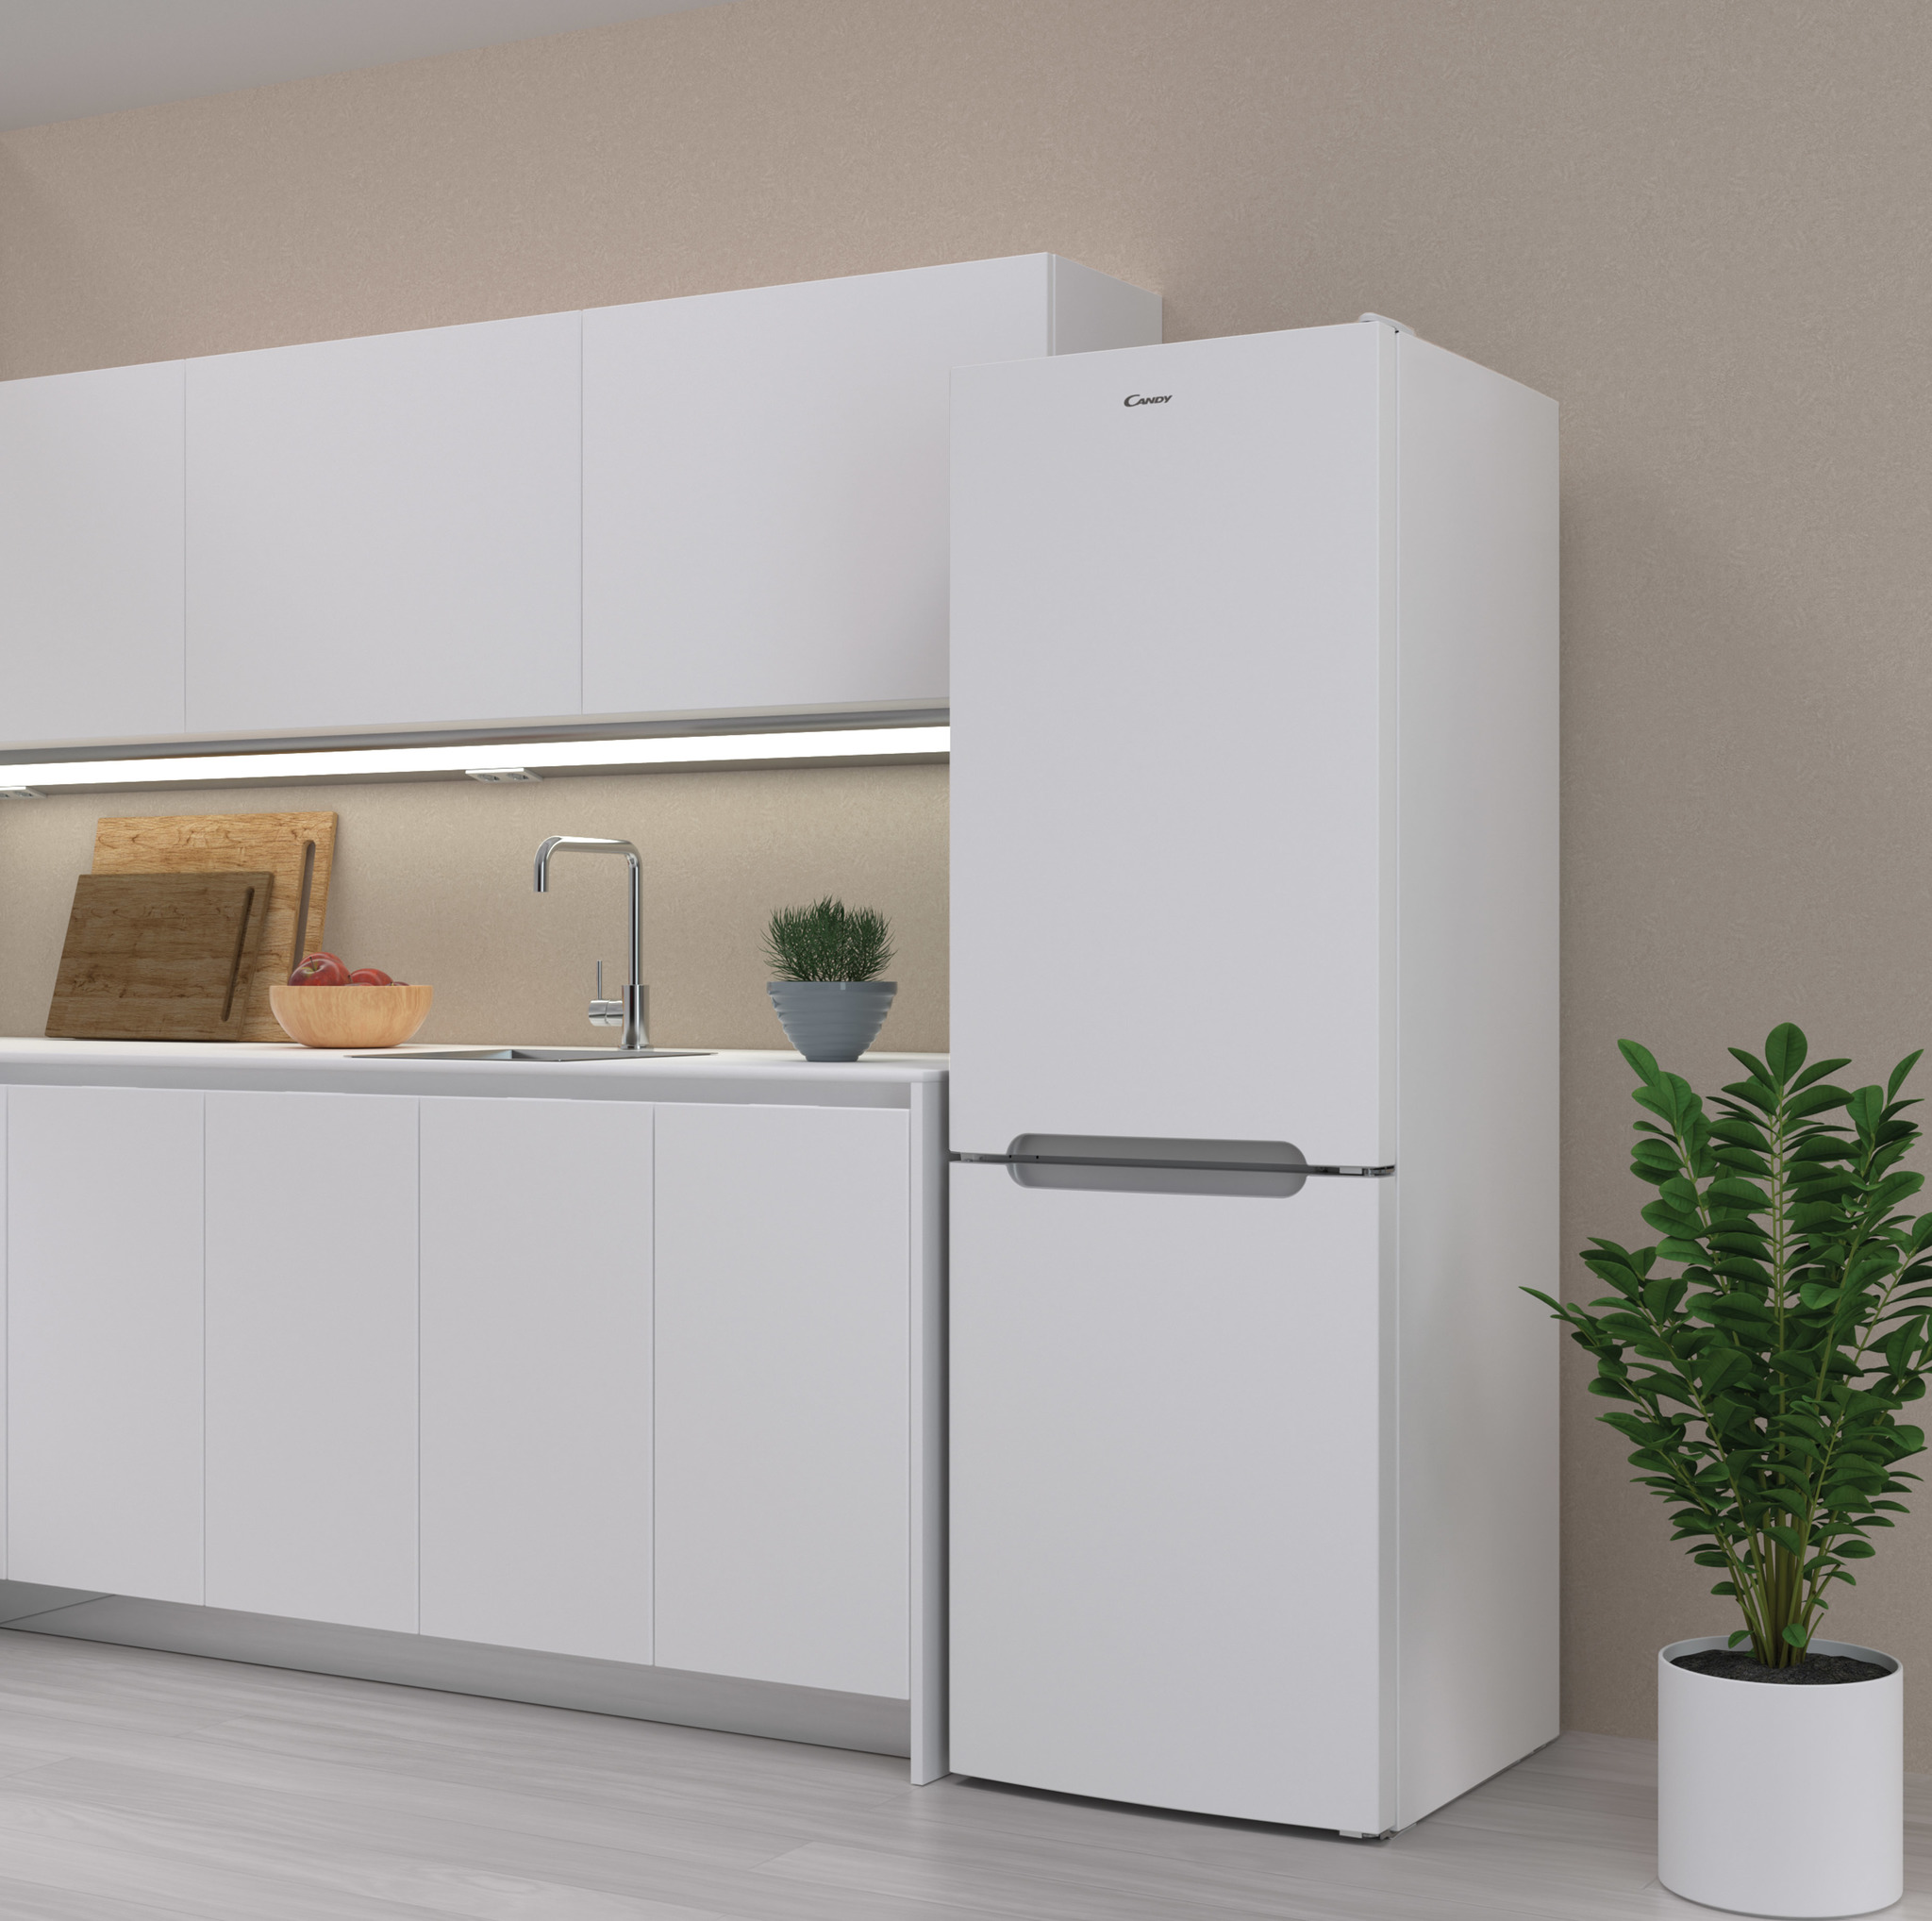 Холодильники Для Дома Цена Фото